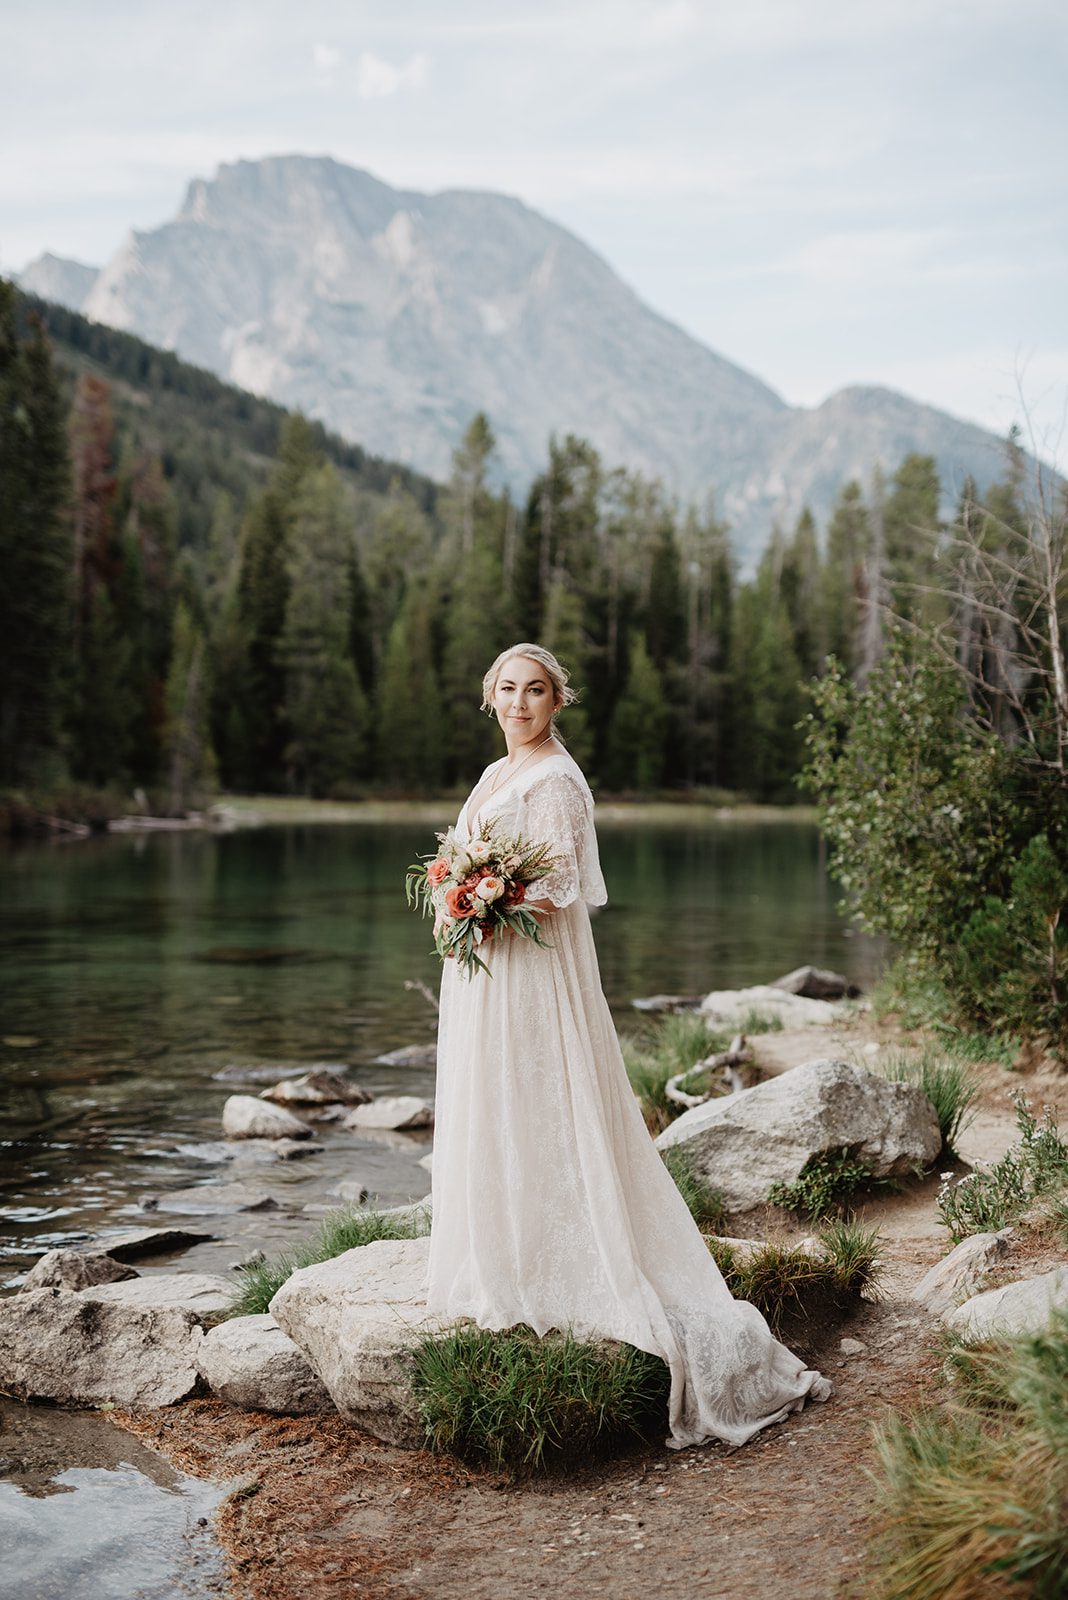 Jackson Hole Elopement Photographer captures bride holding bouquet standing on boulder